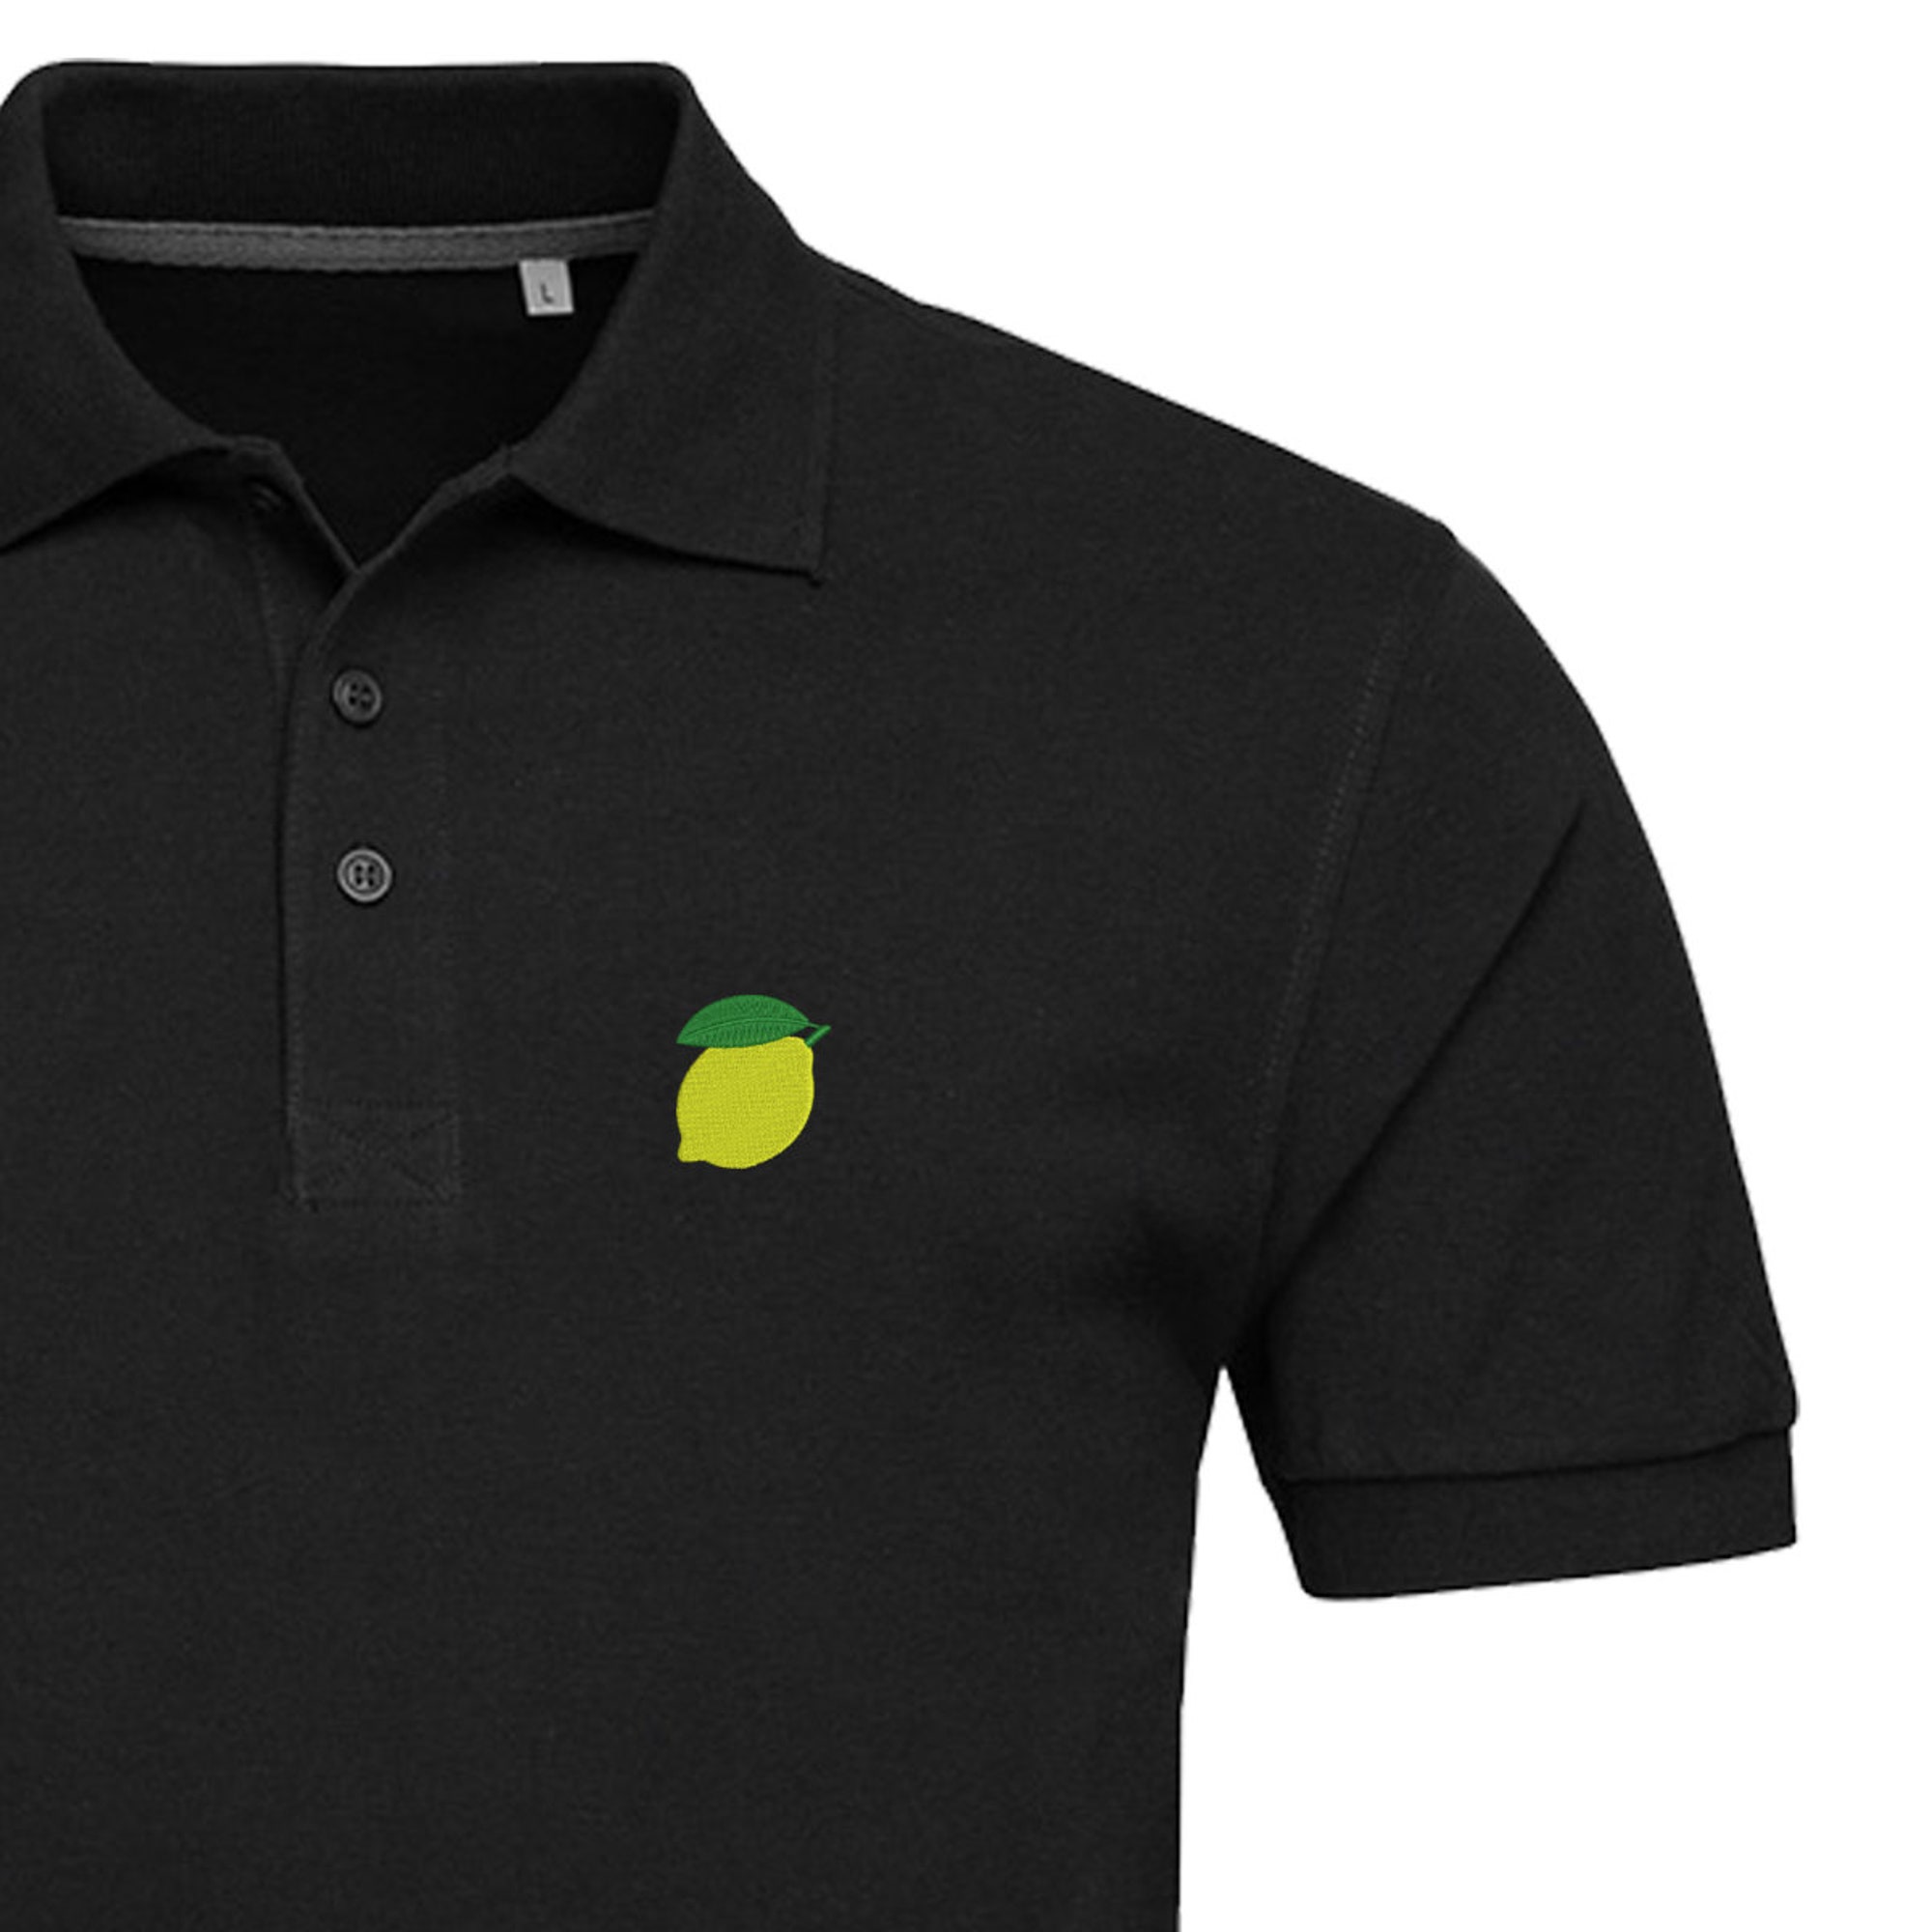 Discover Lemon Embroidered Polo Shirt For Man | Lime Poloshirt